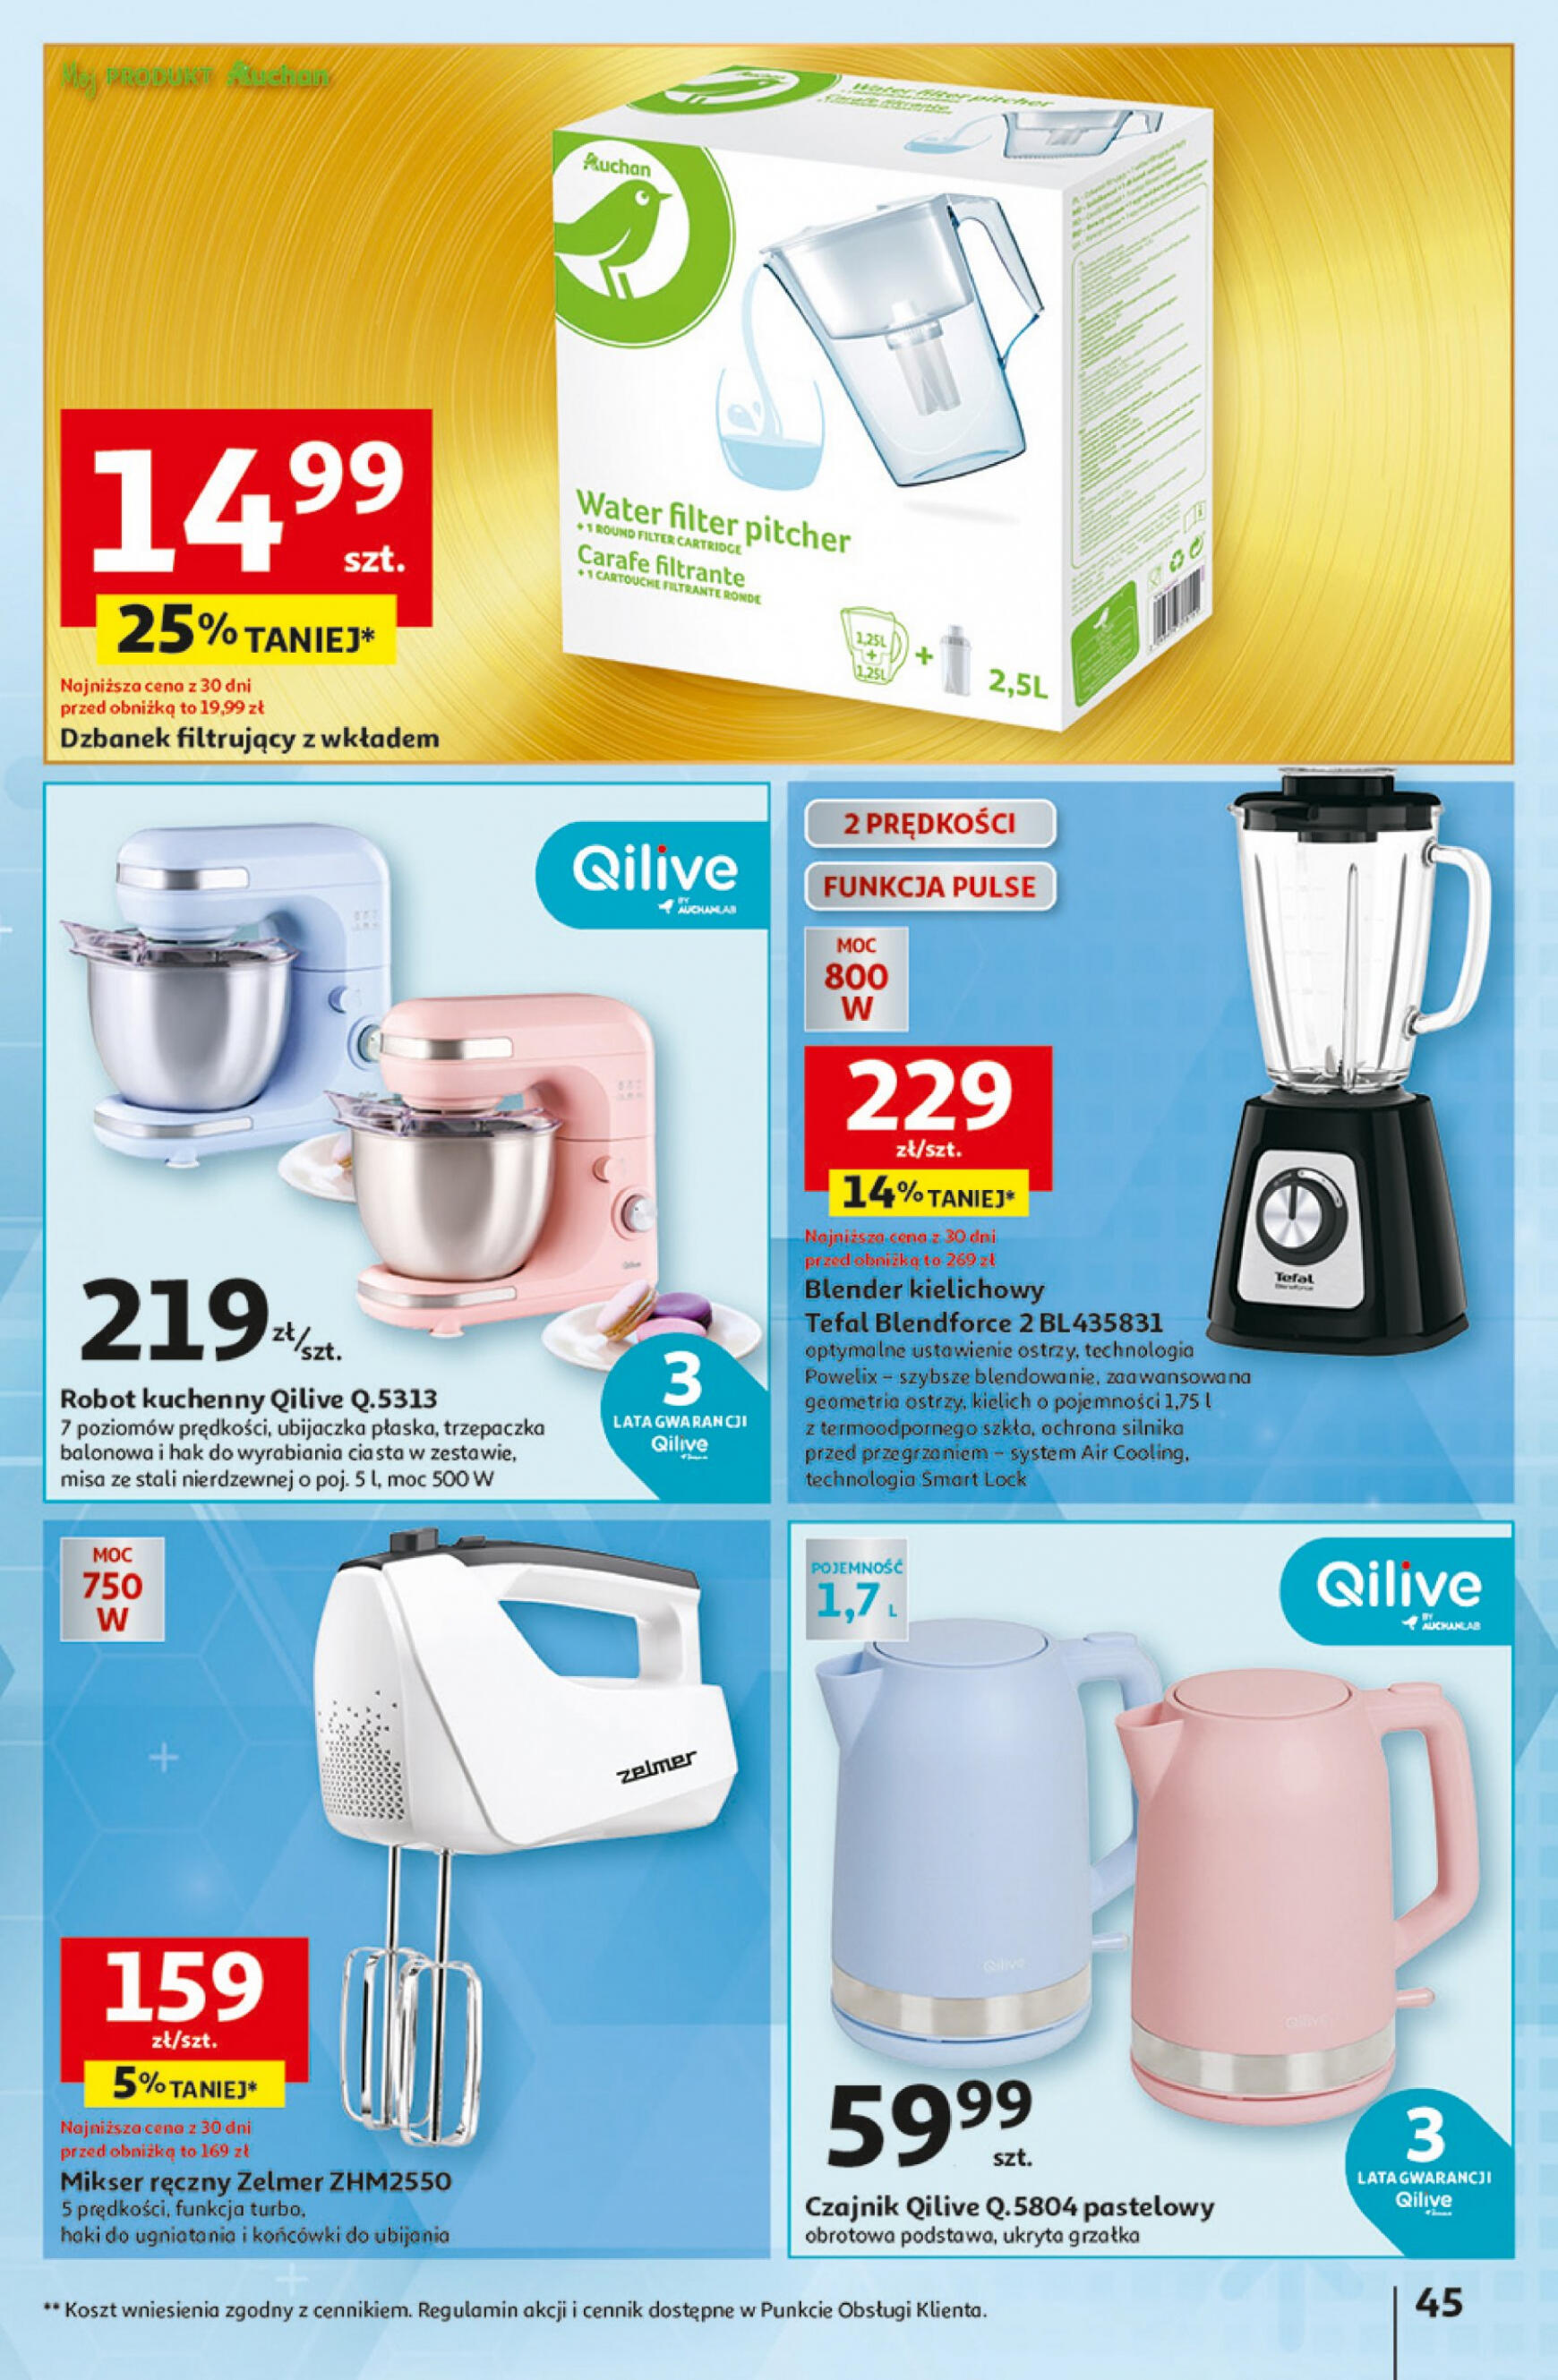 auchan - Hipermarket Auchan - Gazetka Aktywność na świeżym powietrzu! gazetka aktualna ważna od 11.04. - 17.04. - page: 45